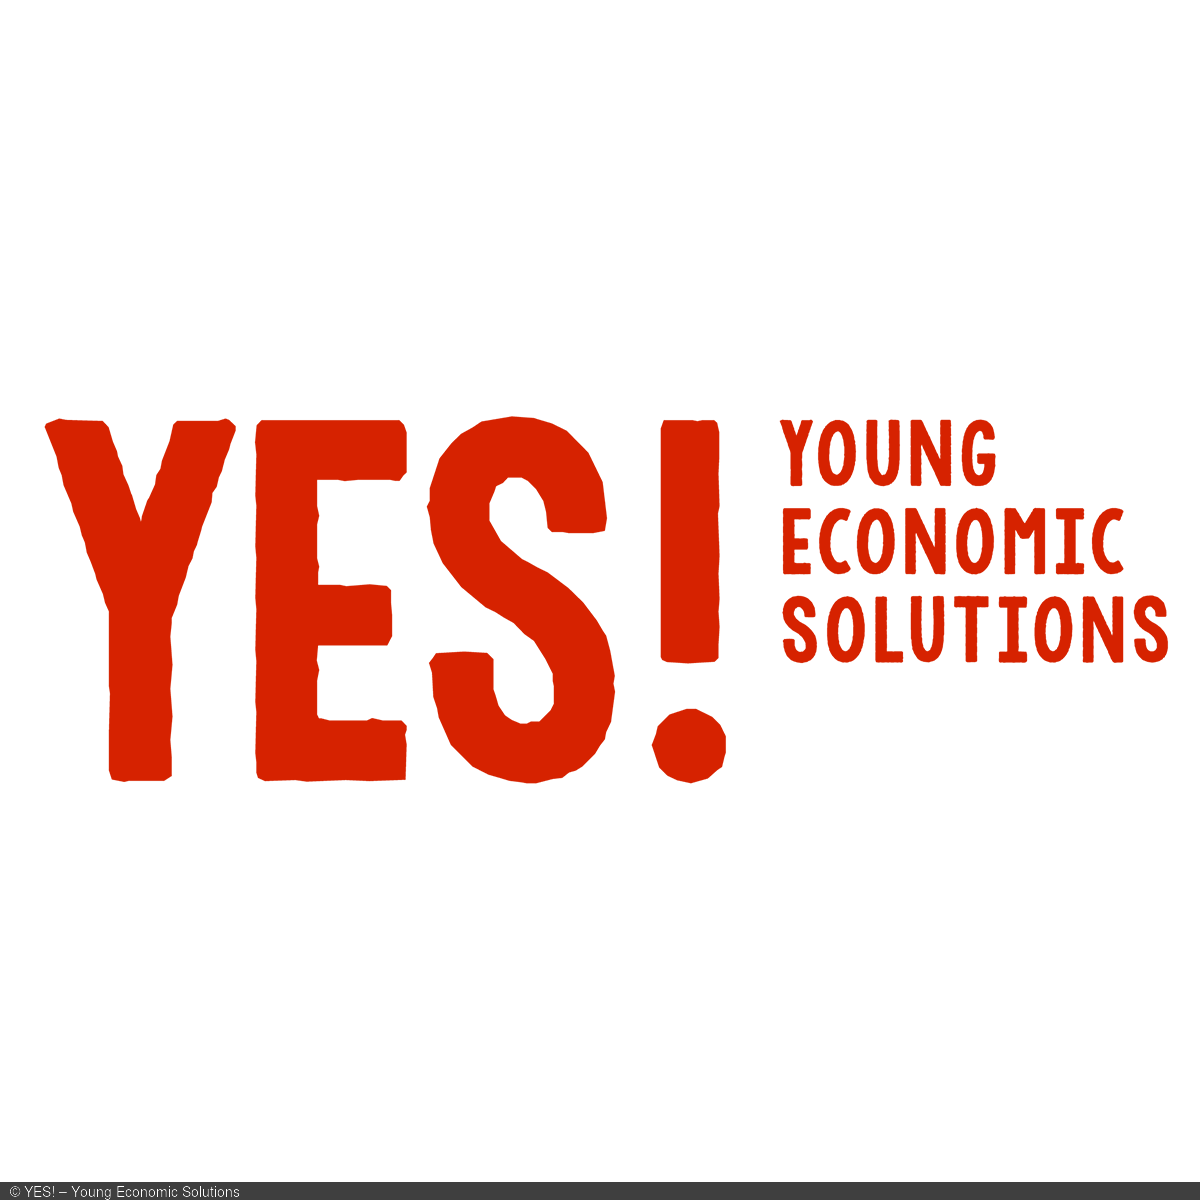 Logo YES! – Young Economic Solutions, Wort-Bild-Marke, orangefarbener Text auf weißem Grund